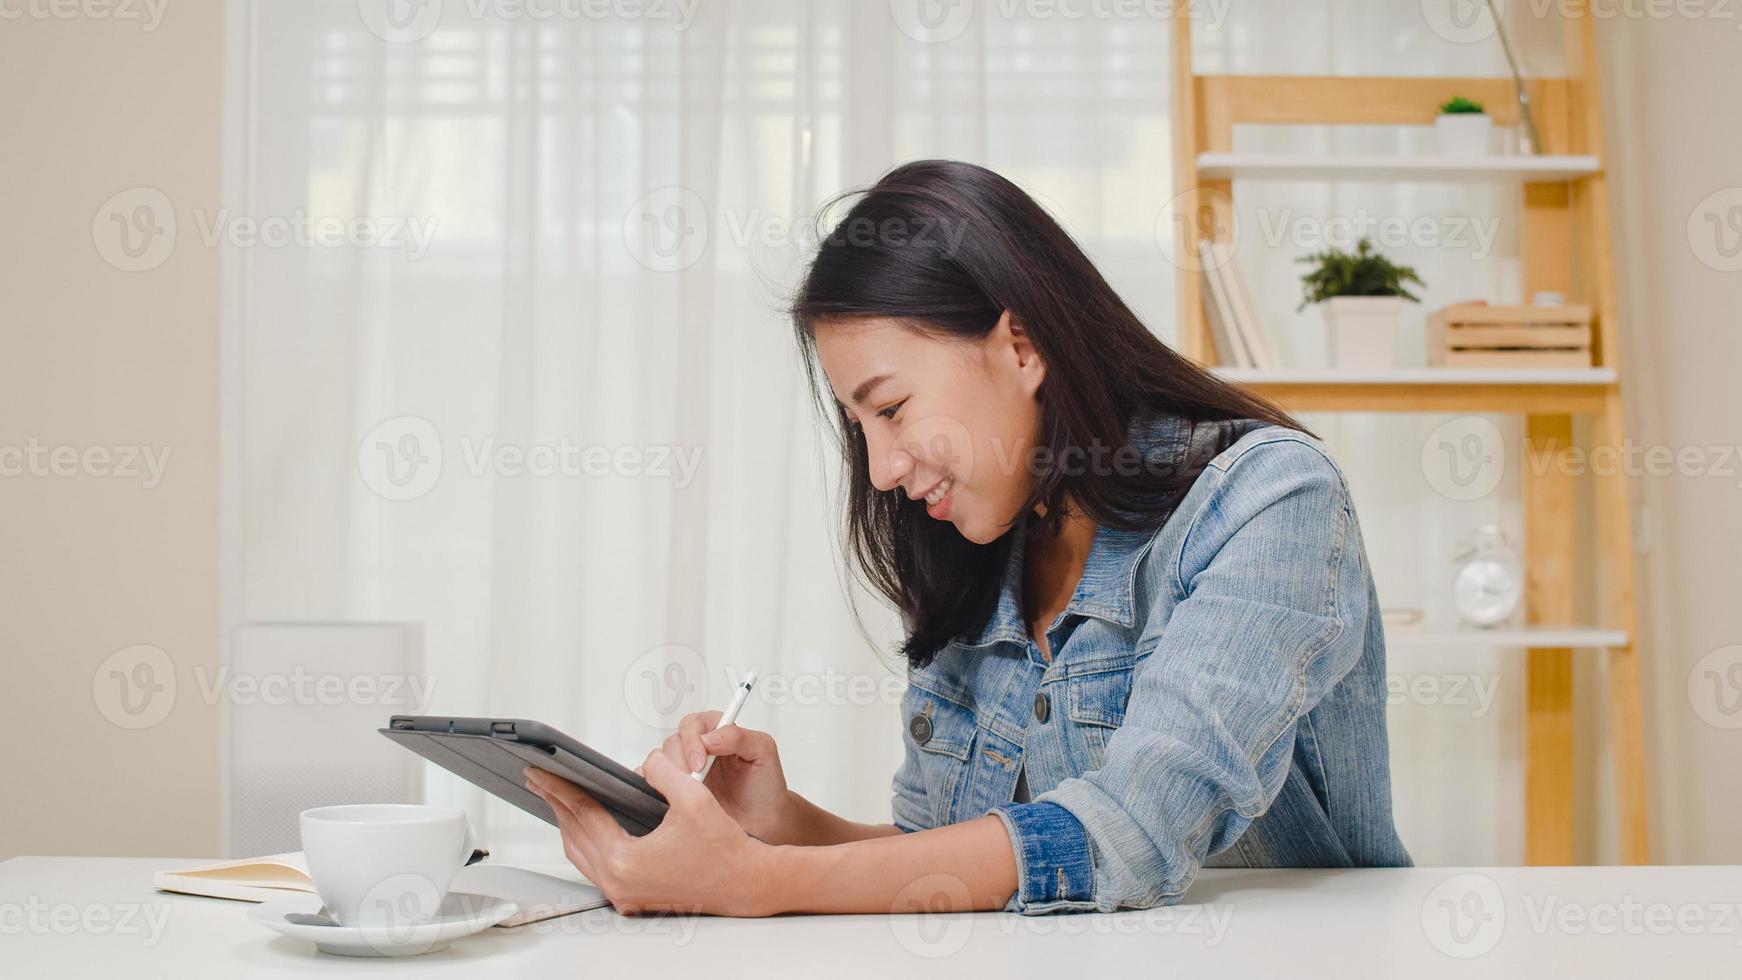 freelance graphic designer donne abbigliamento casual utilizzando tavoletta grafica digitale disegno sul posto di lavoro nel soggiorno di casa. felice giovane ragazza asiatica rilassarsi seduto sulla scrivania fare un lavoro in internet. foto